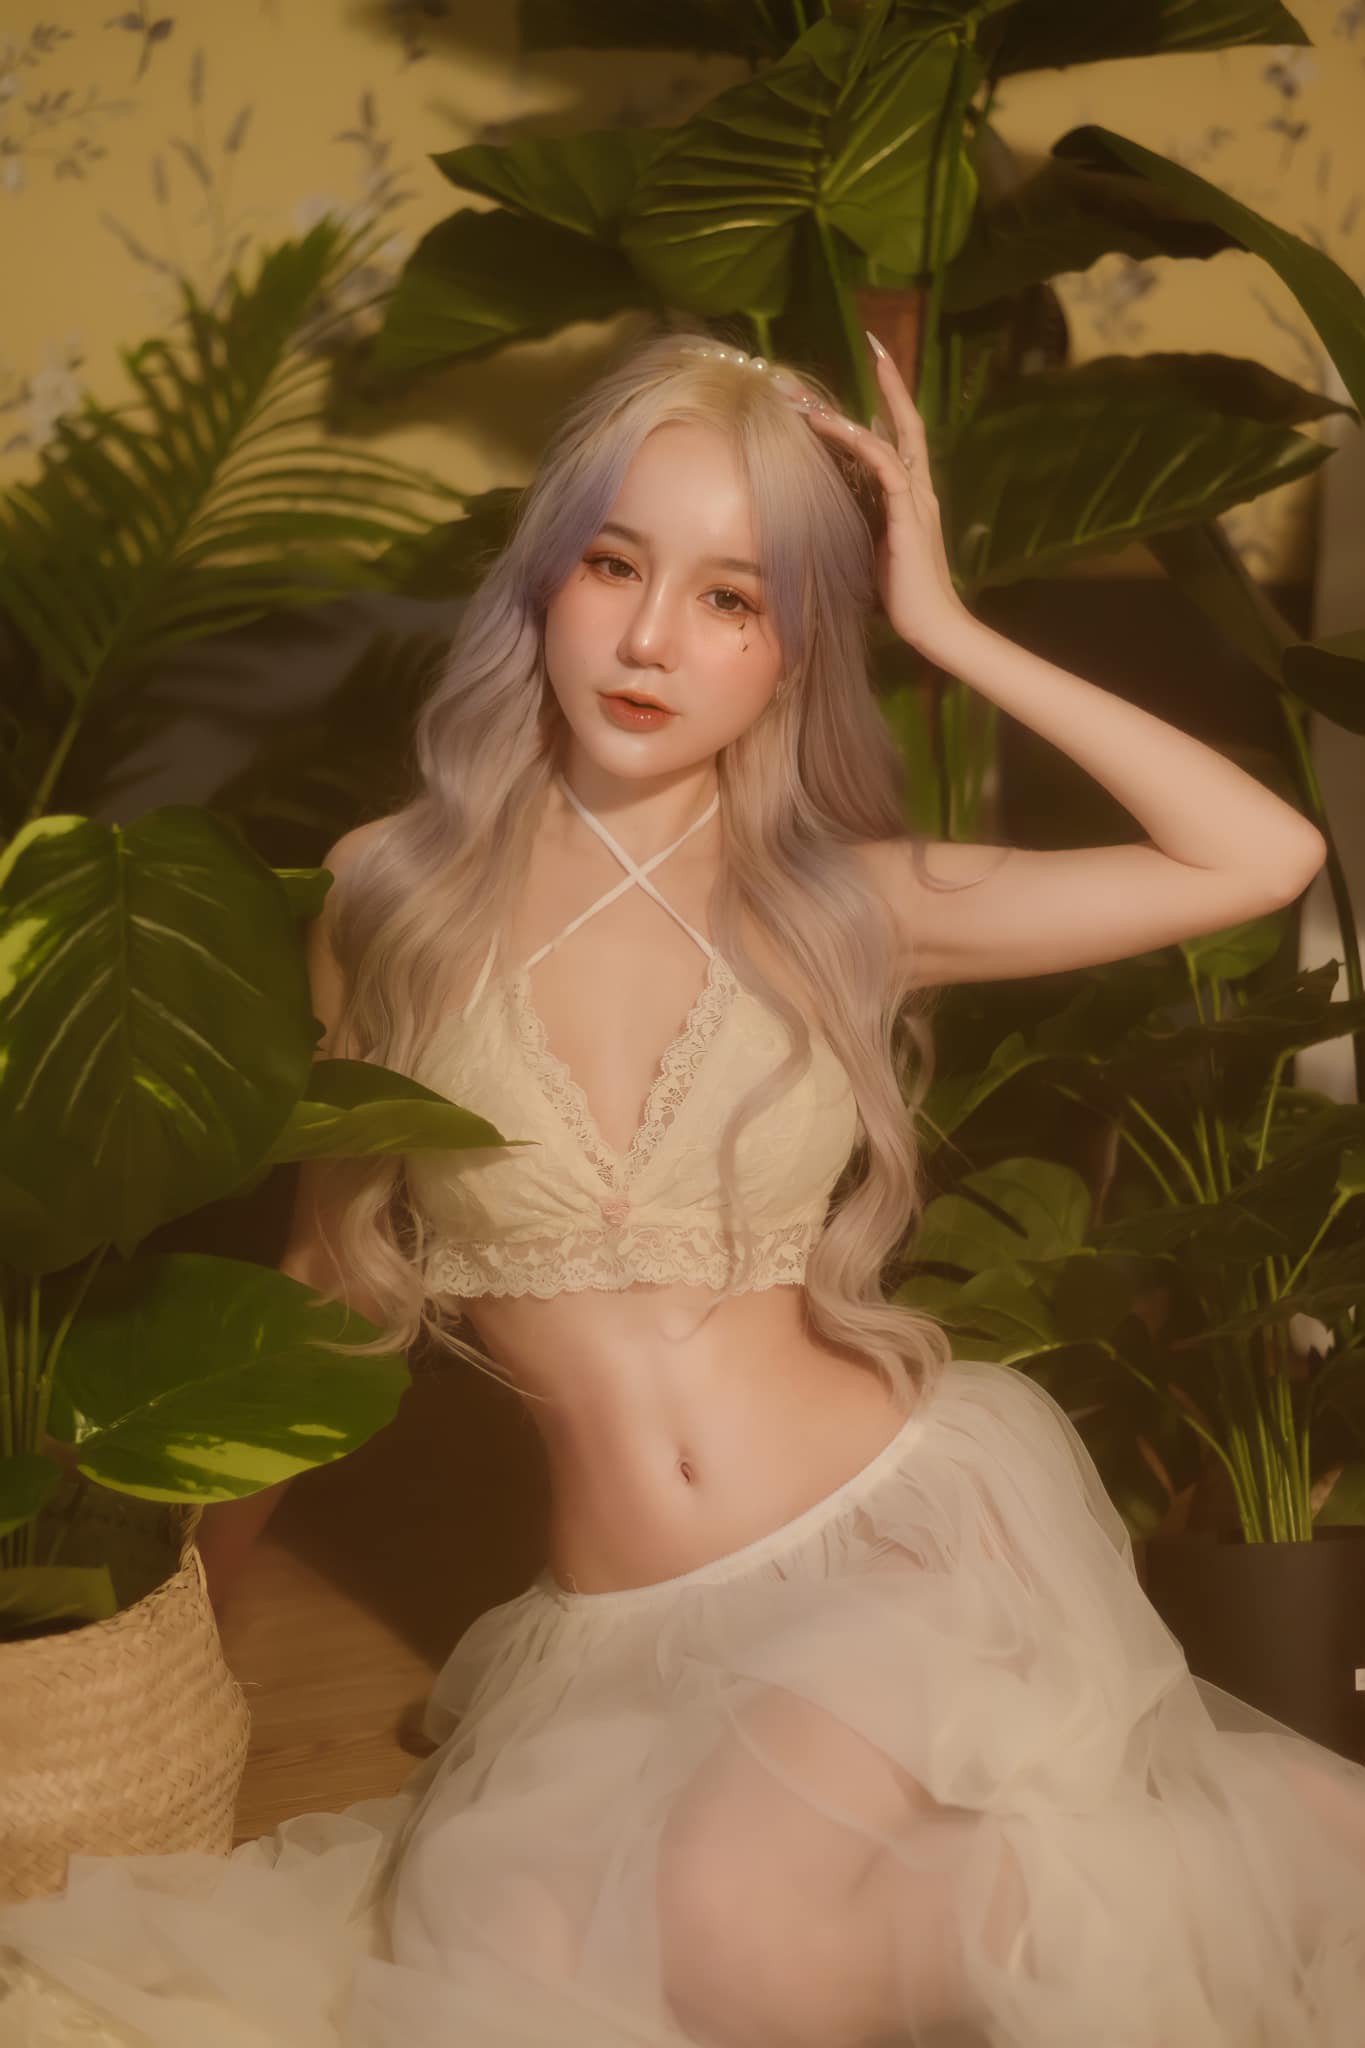 Nữ streamer tóc bạch kim lộ body, netizen hết lời khen ngợi - Hình 5